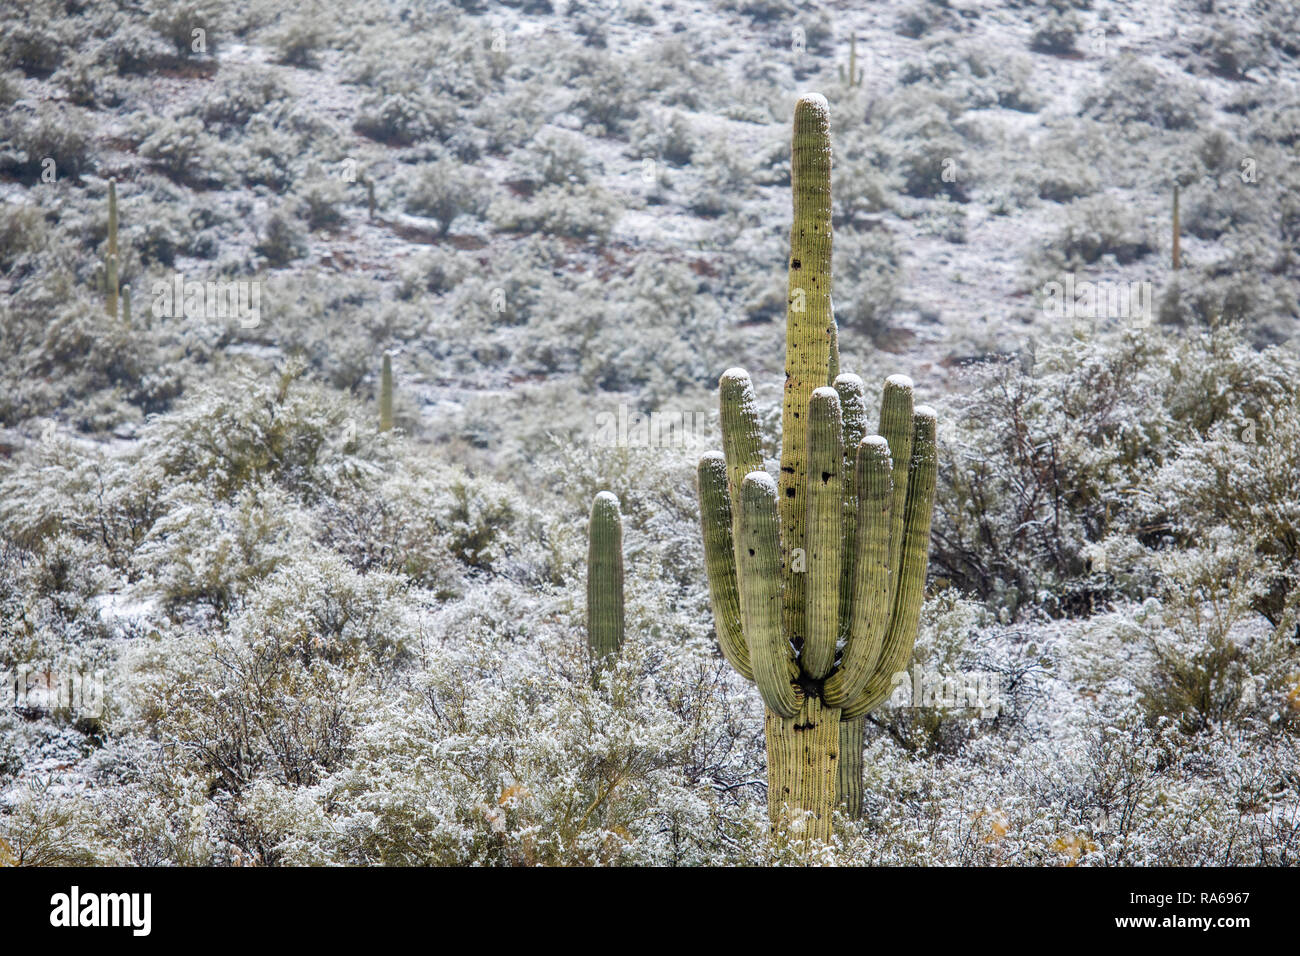 La neve cade nel deserto dell'Arizona ad altitudini basse fino a 2.000 piedi, a nord di Phoenix come una fredda tempesta invernale spostata attraverso l'area di Bumble Bee, Arizona, Stati Uniti Foto Stock